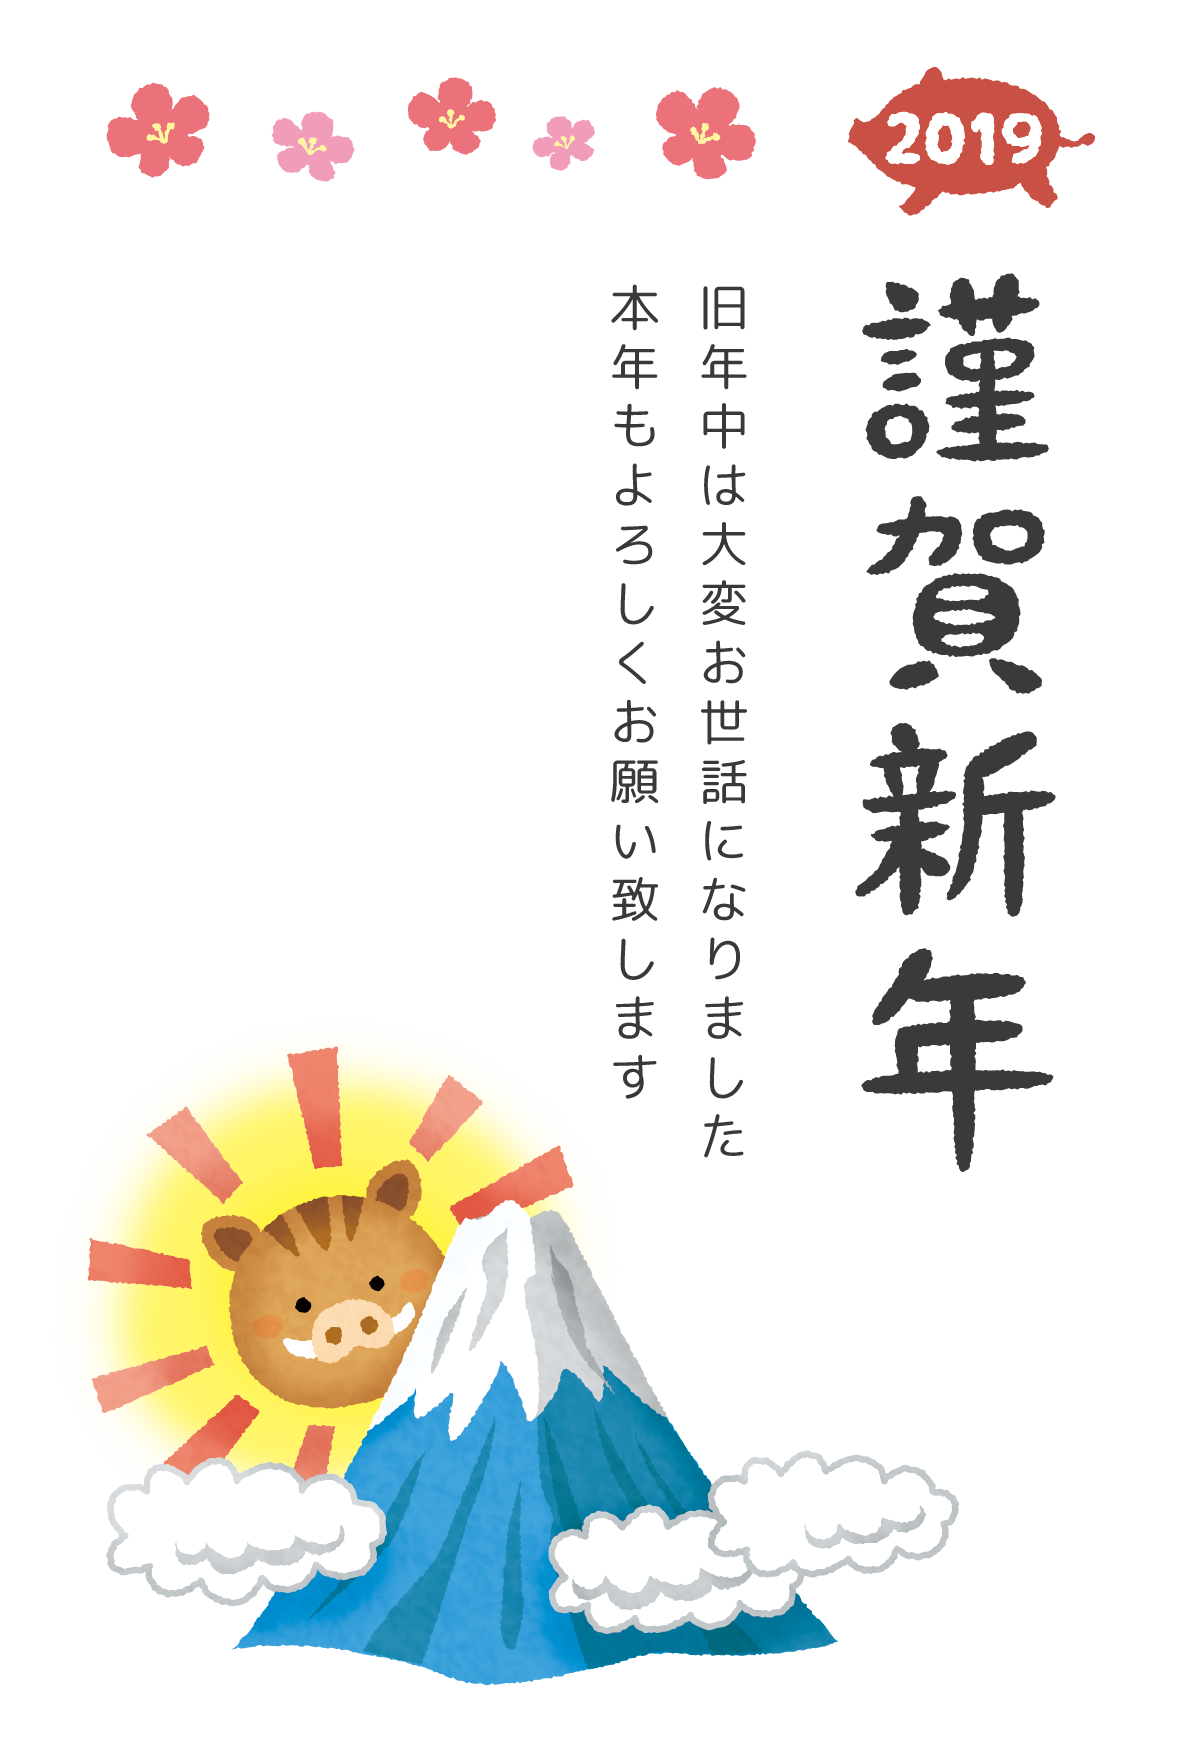 Kingashinnen Card Free Template (Boar and Mount Fuji)